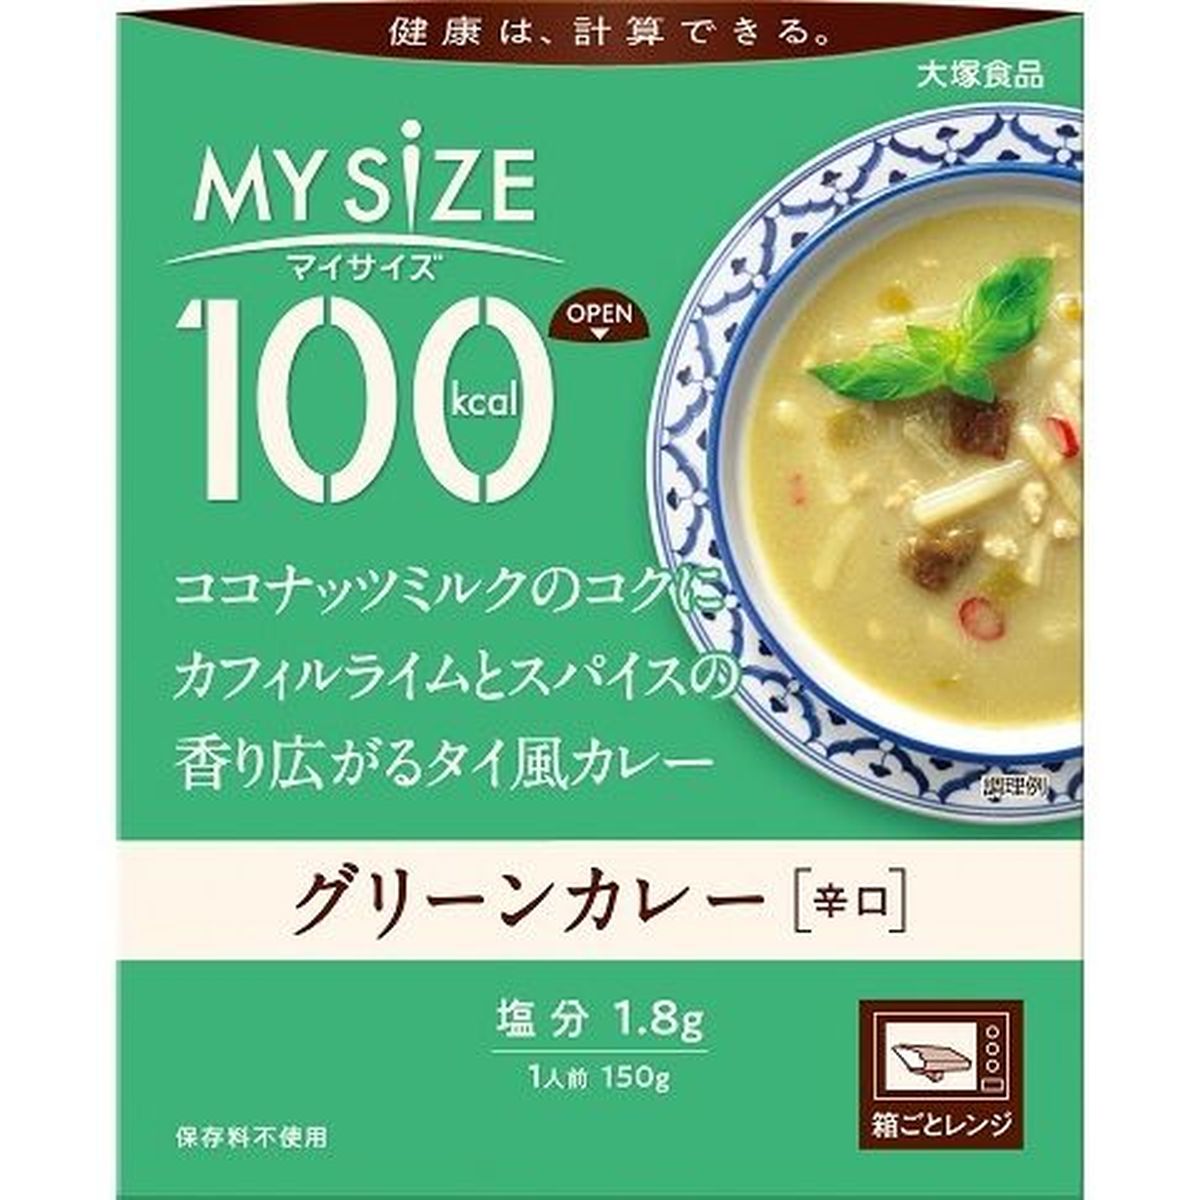 【10個入リ】大塚食品 グリーンカレー 150g